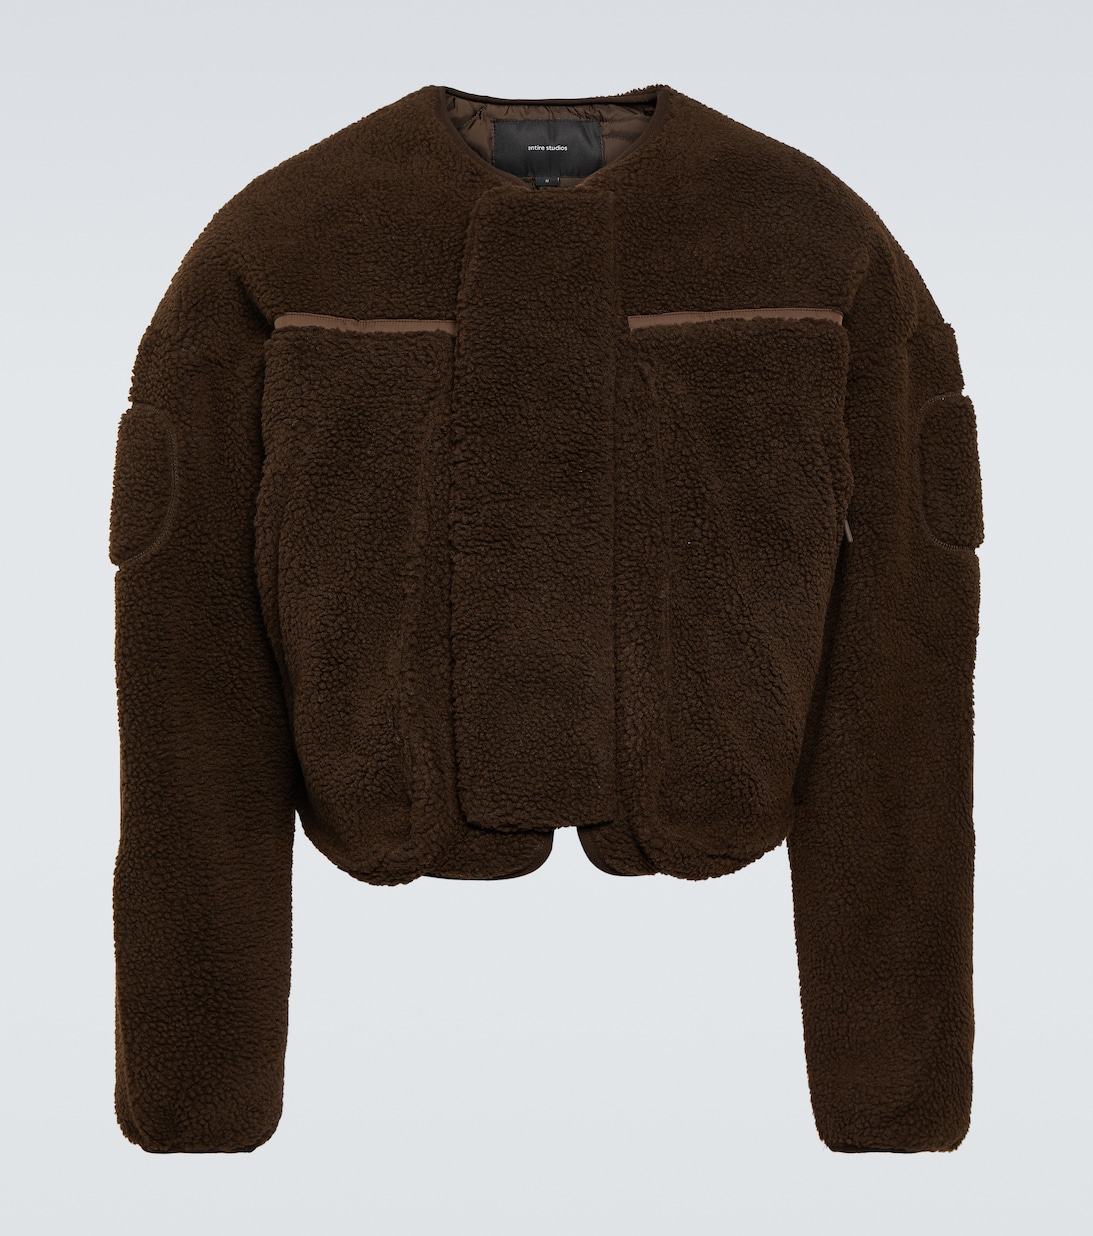 Куртка из искусственной овчины Entire Studios, коричневый куртка inge из искусственной овчины с капюшоном liewood коричневый